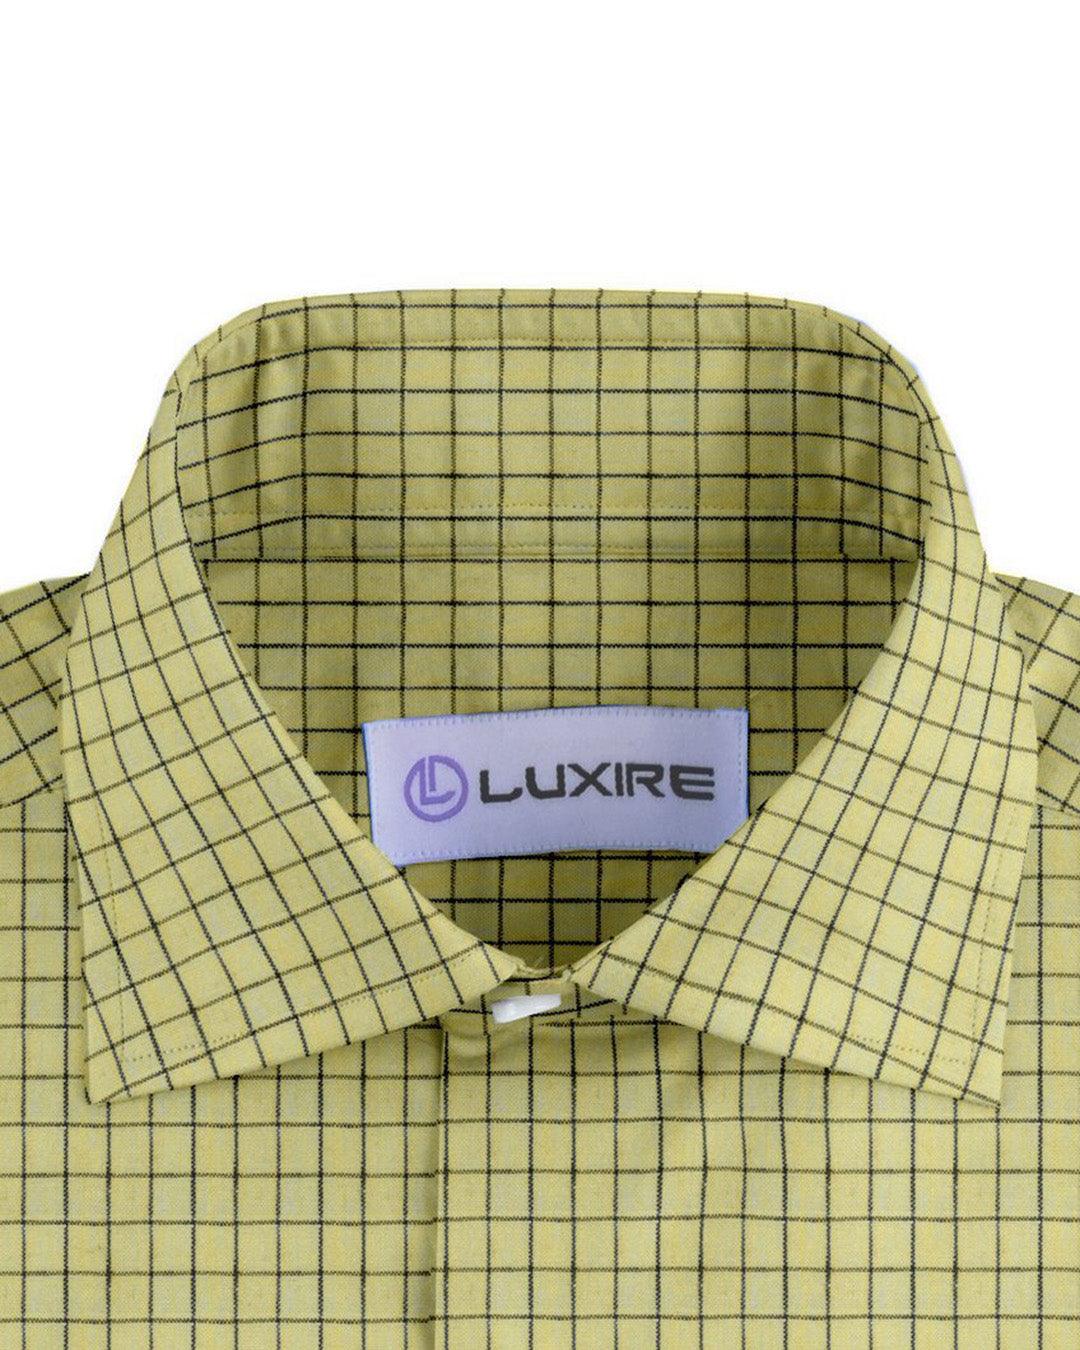 Collar of custom linen shirt for men in yellow checks